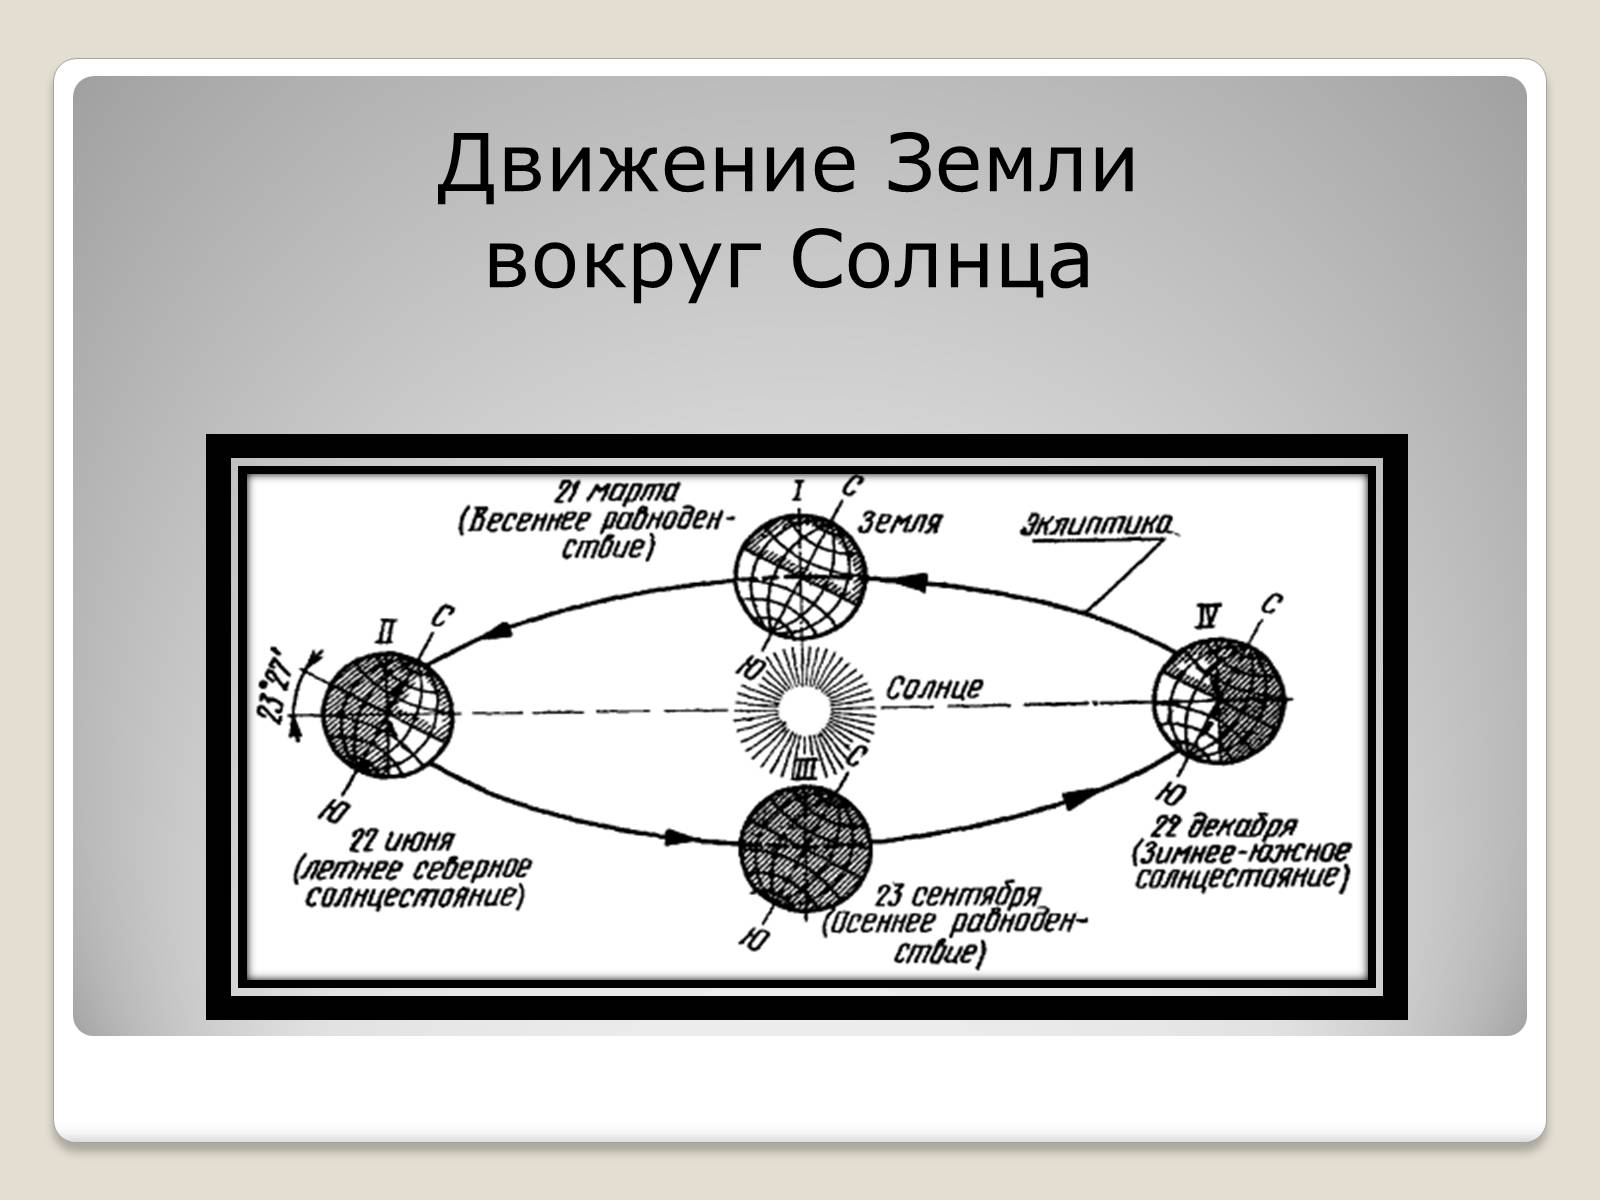 Следствием орбитального движения земли является. Движение земли вокруг солнца. Годовой оборот земли вокруг солнца.